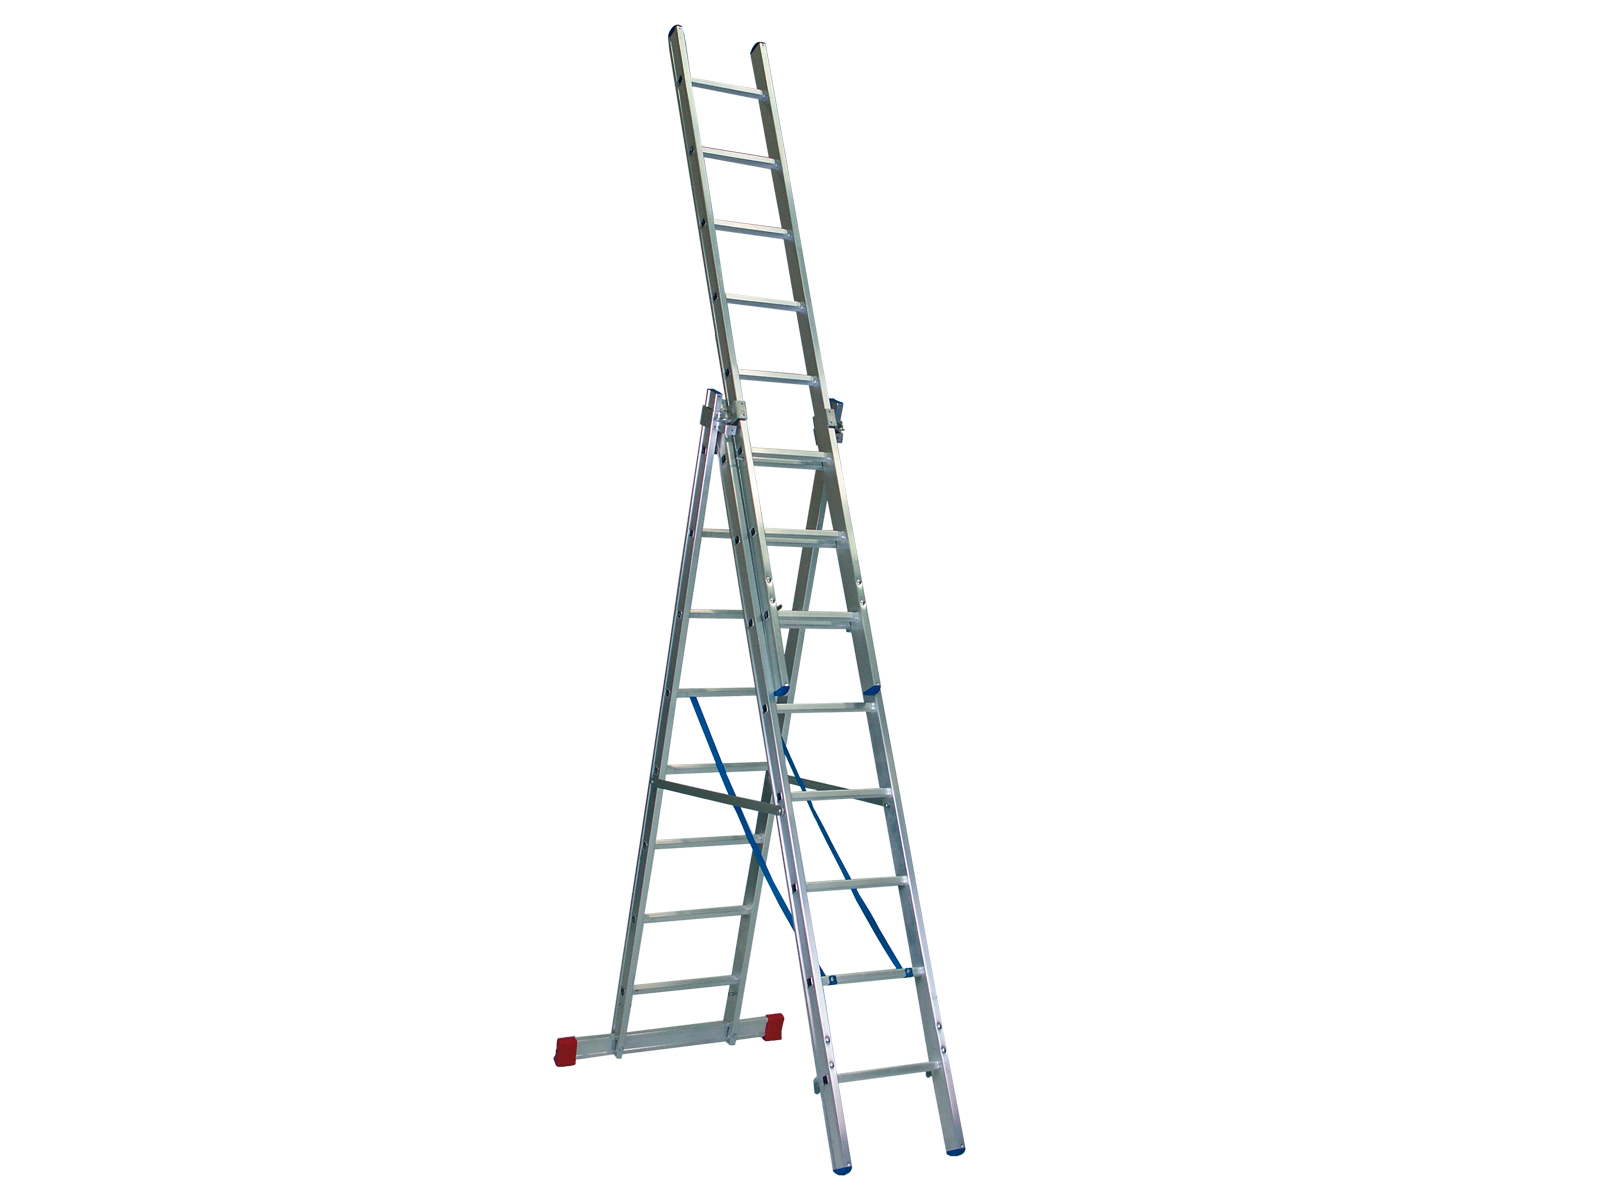 Mehrzweckleiter „Handwerkerausführung“ 3-teilig, 35/41/47 cm breit mit Aussteifungsstreben an den Leiternteilen, 3 x 6 Sprossen